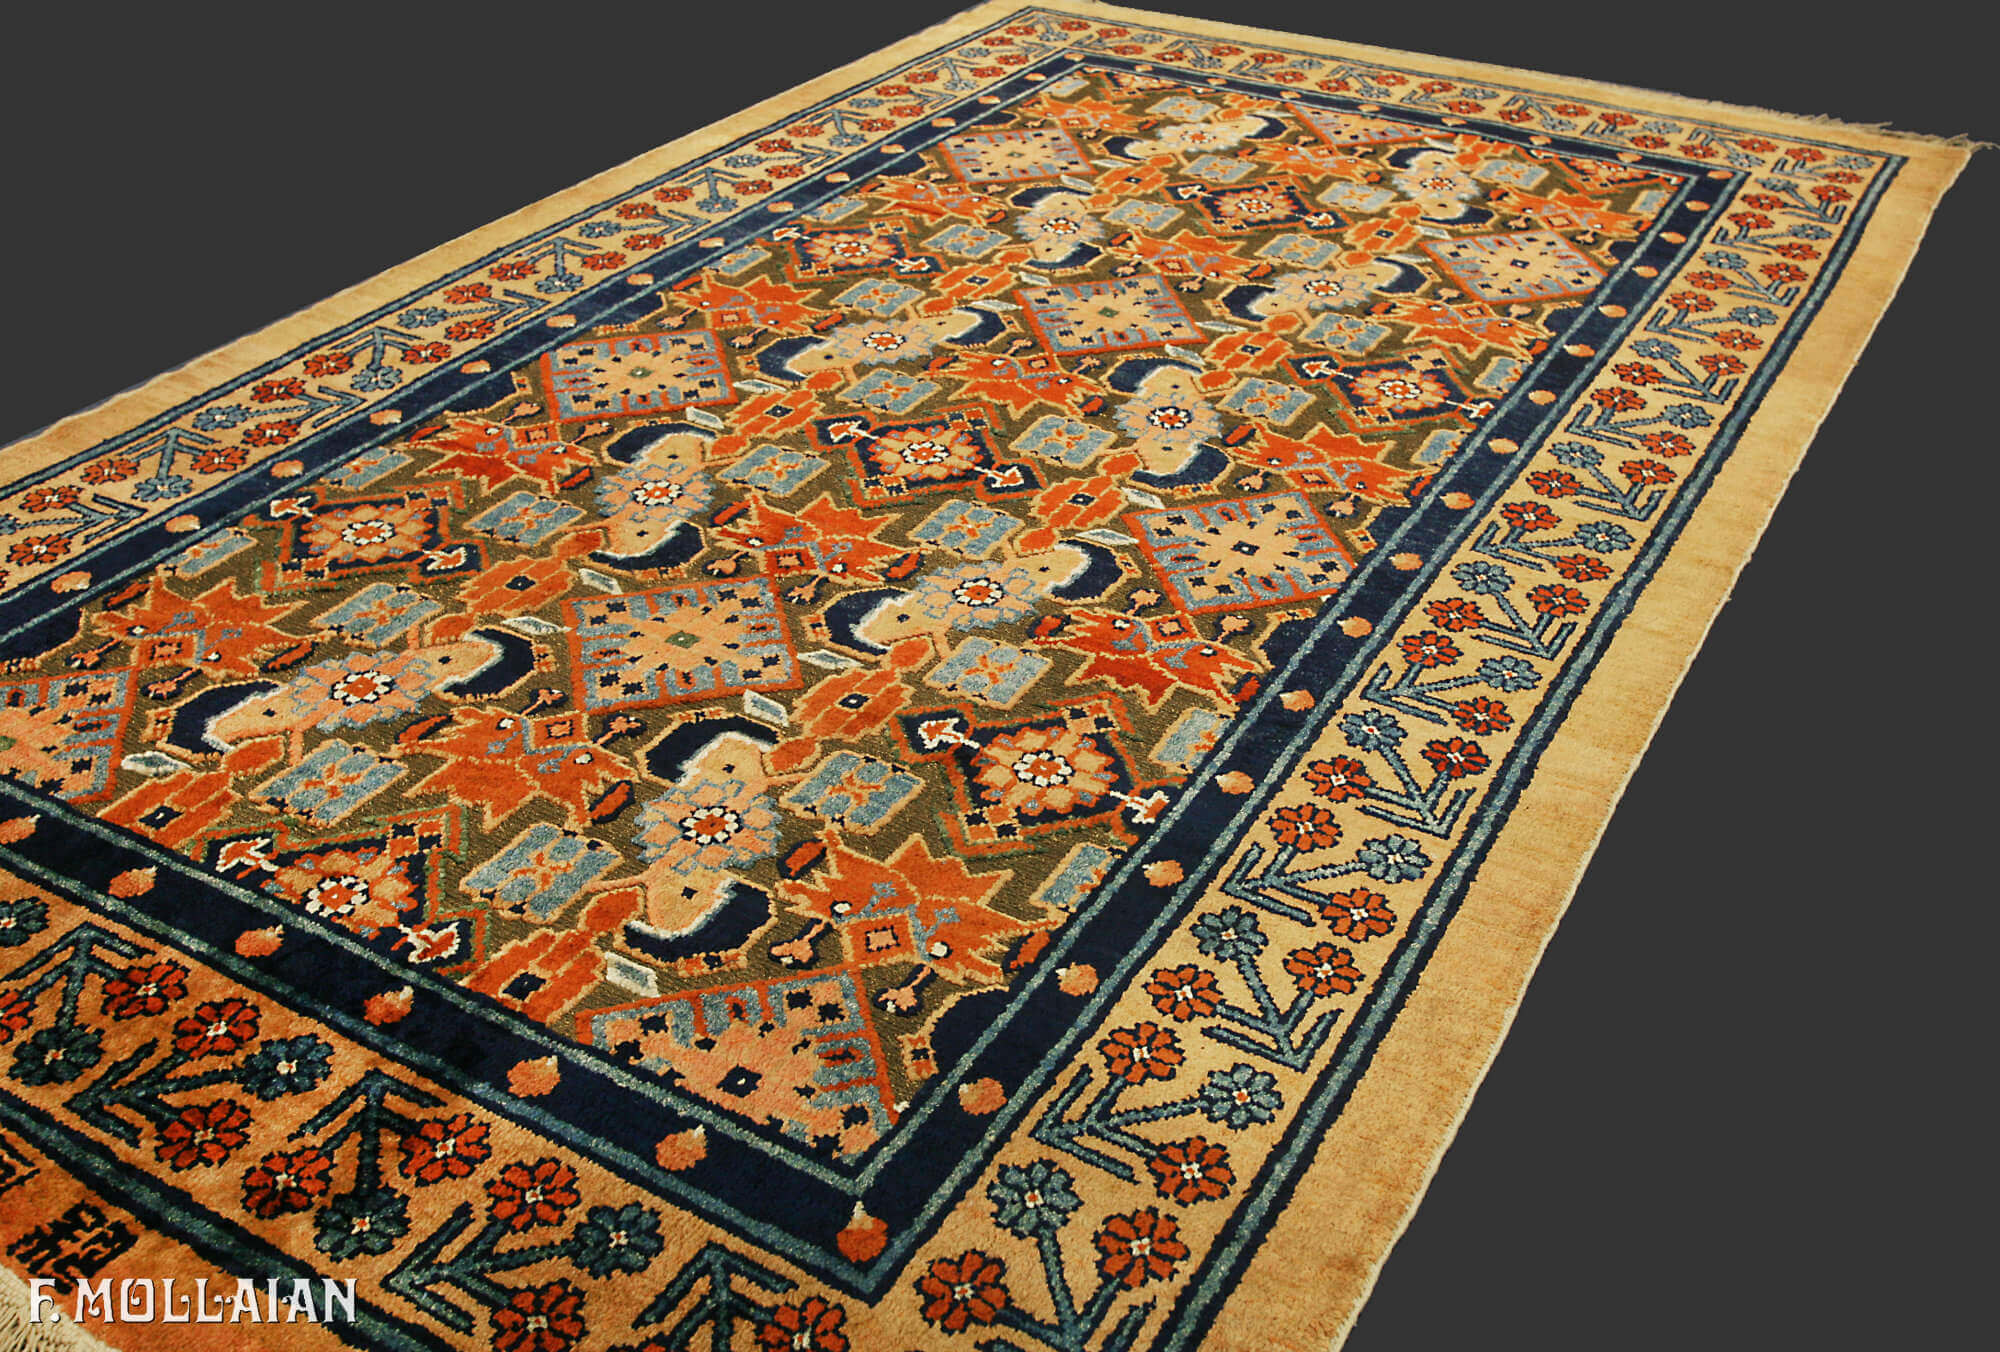 Antike chinesische Seide und Metall Teppich von Imperial Palace n°:79466225